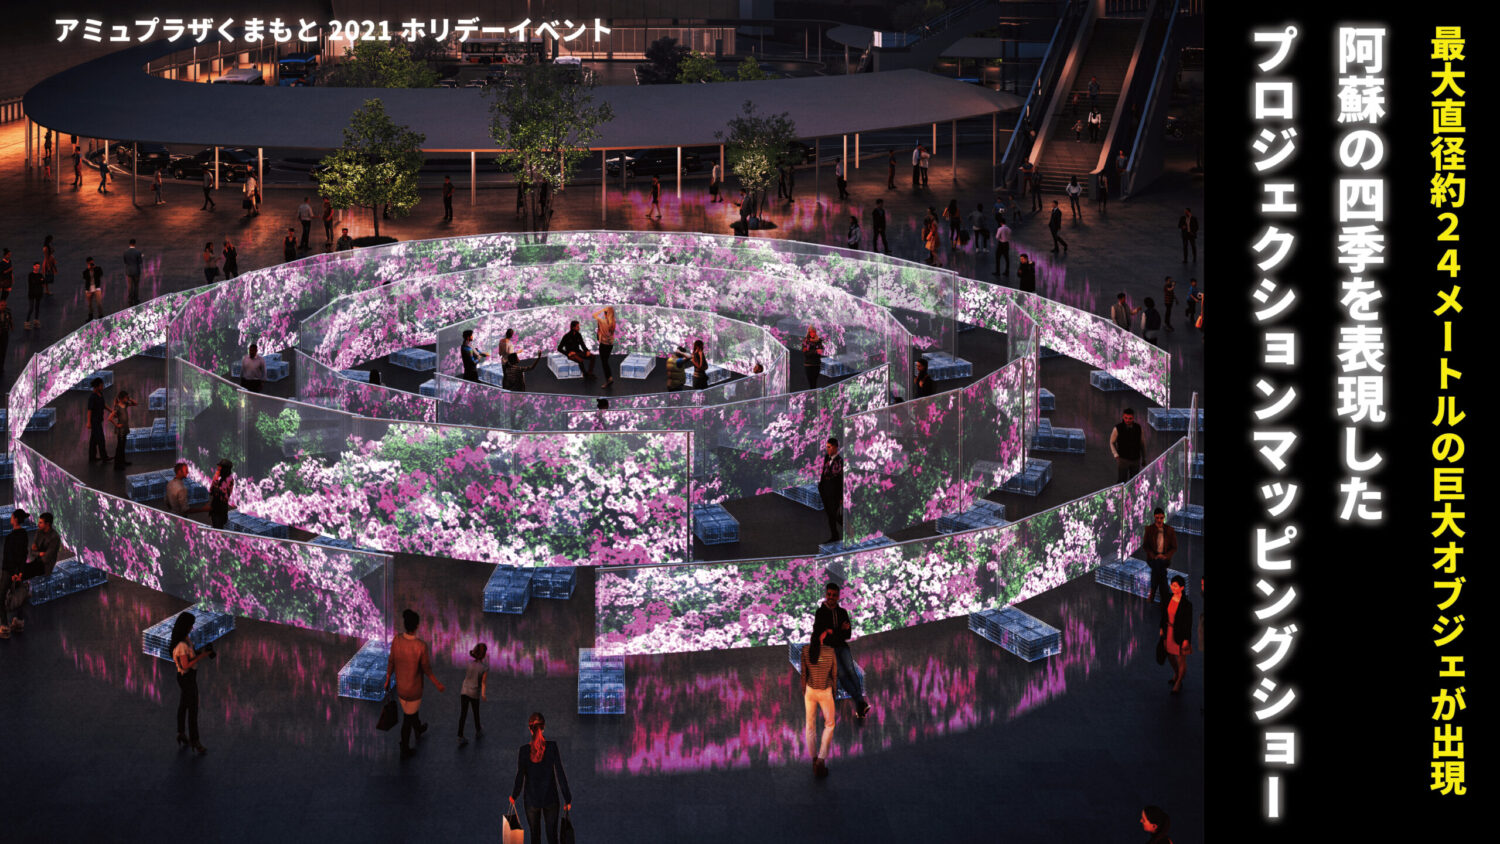 アミュプラザくまもと前の アミュ広場 に壮大なプロジェクションマッピングショーが登場 Nasse Online